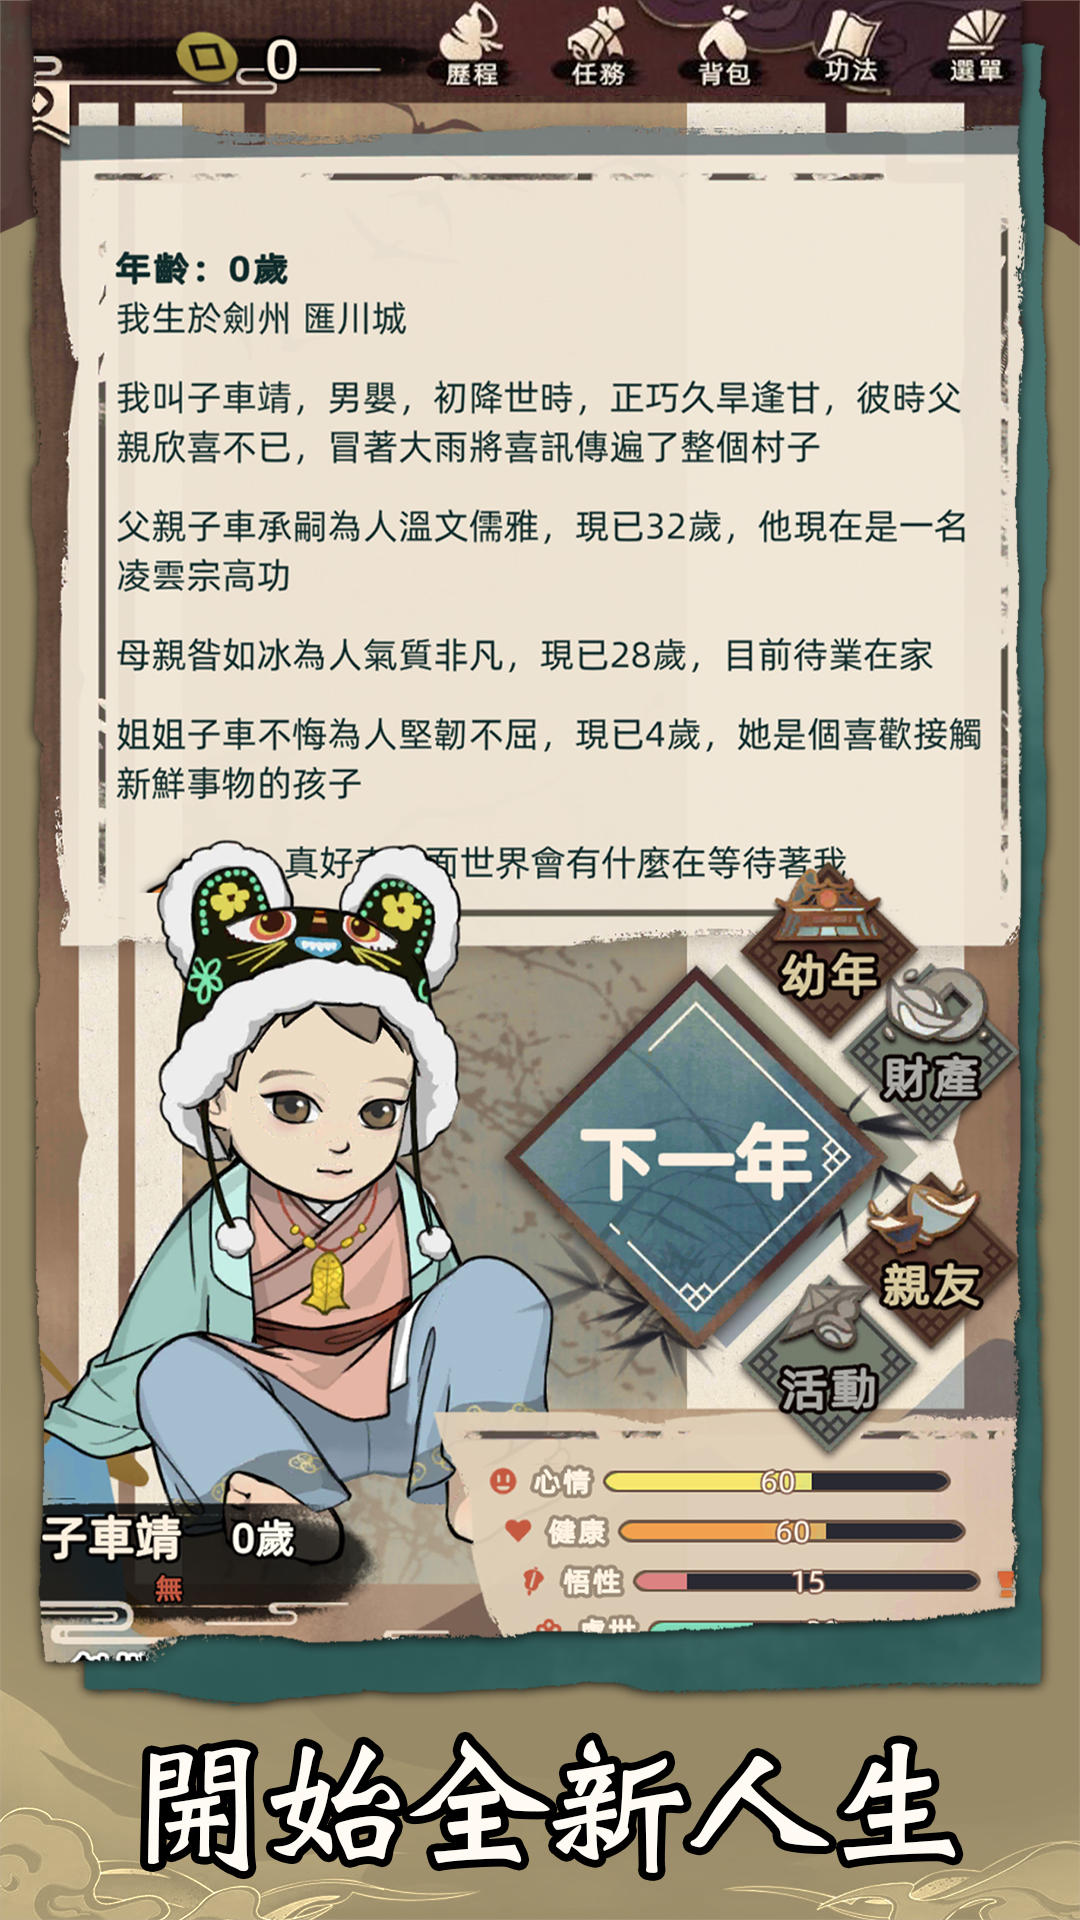 Screenshot 1 of Симулятор жизни Цзянху 0.4.4